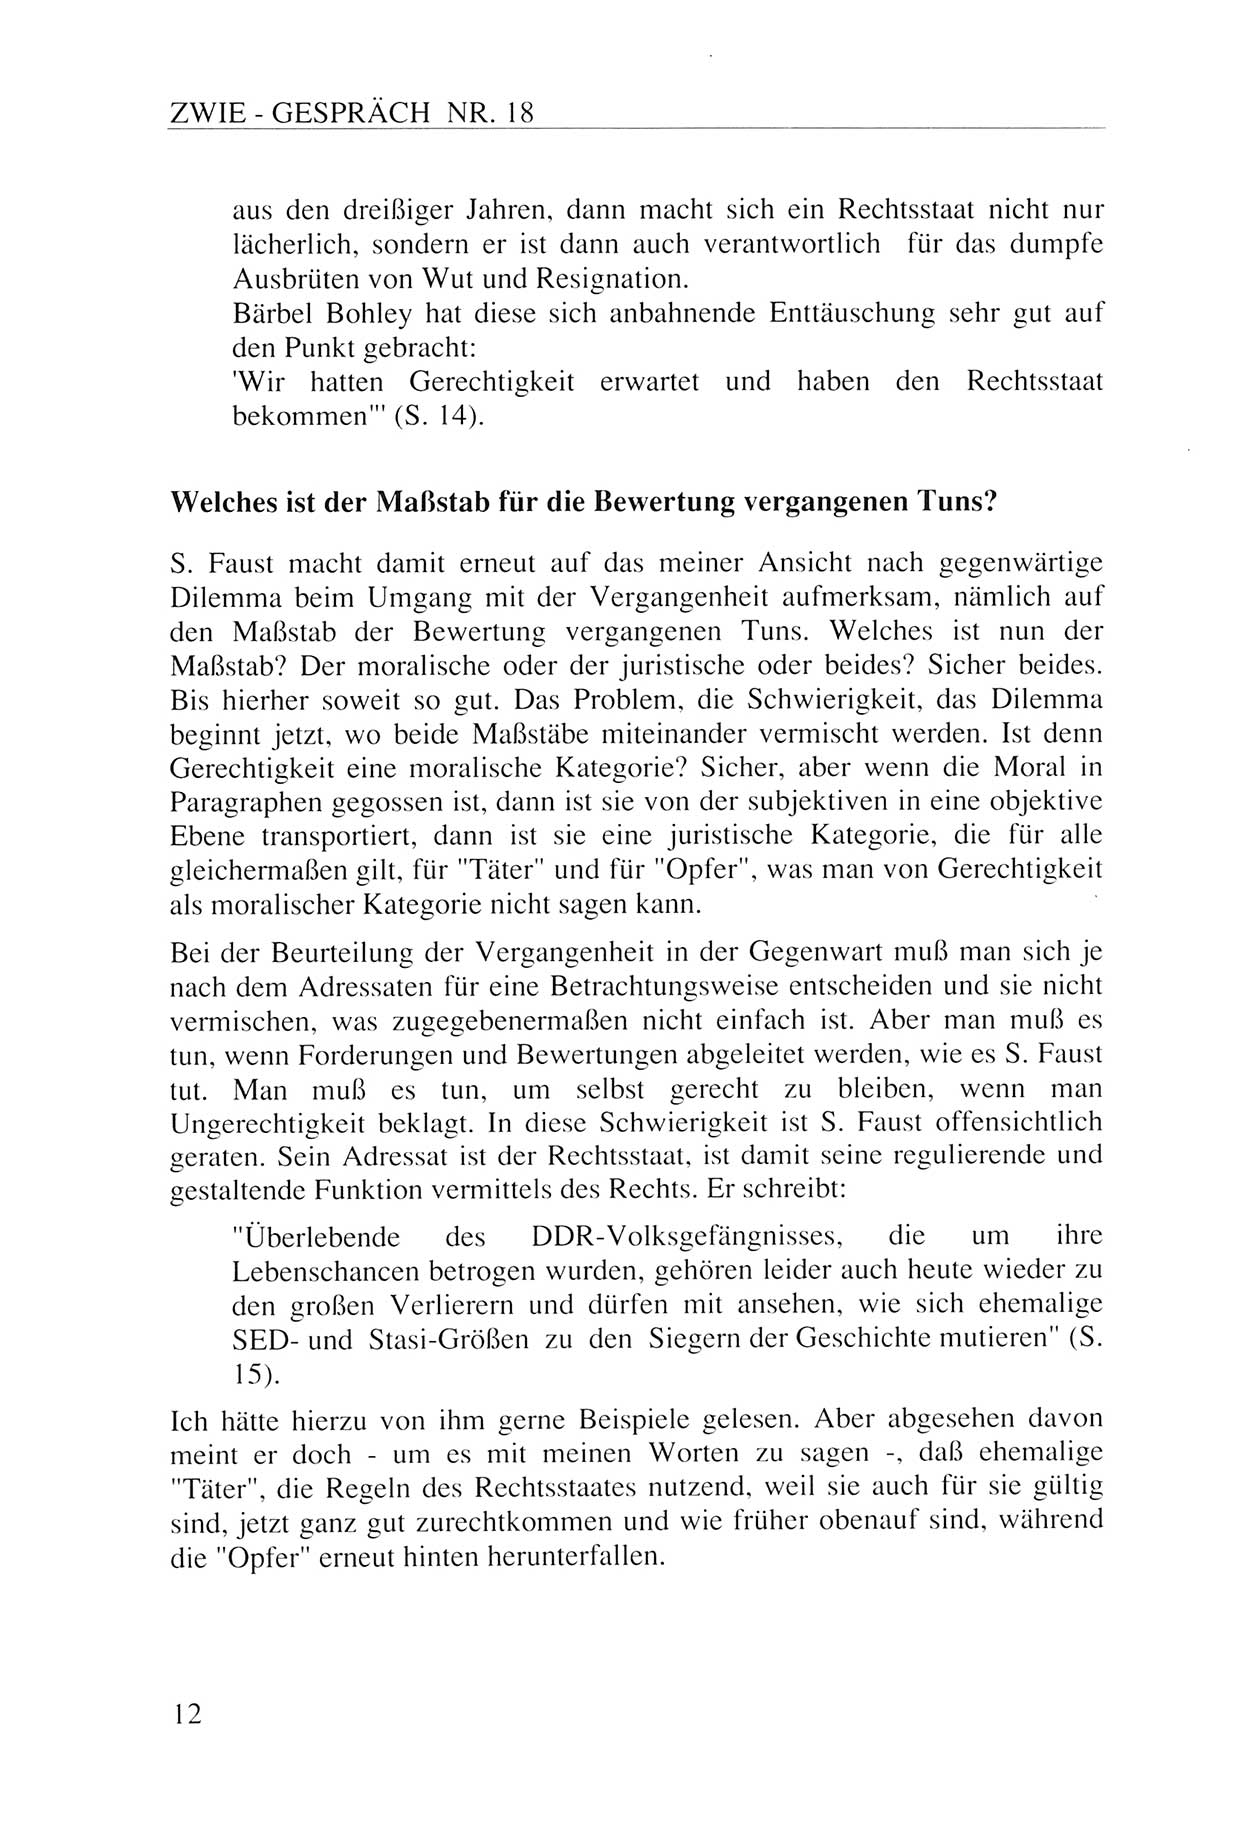 Zwie-Gespräch, Beiträge zur Aufarbeitung der Staatssicherheits-Vergangenheit [Deutsche Demokratische Republik (DDR)], Ausgabe Nr. 18, Berlin 1993, Seite 12 (Zwie-Gespr. Ausg. 18 1993, S. 12)